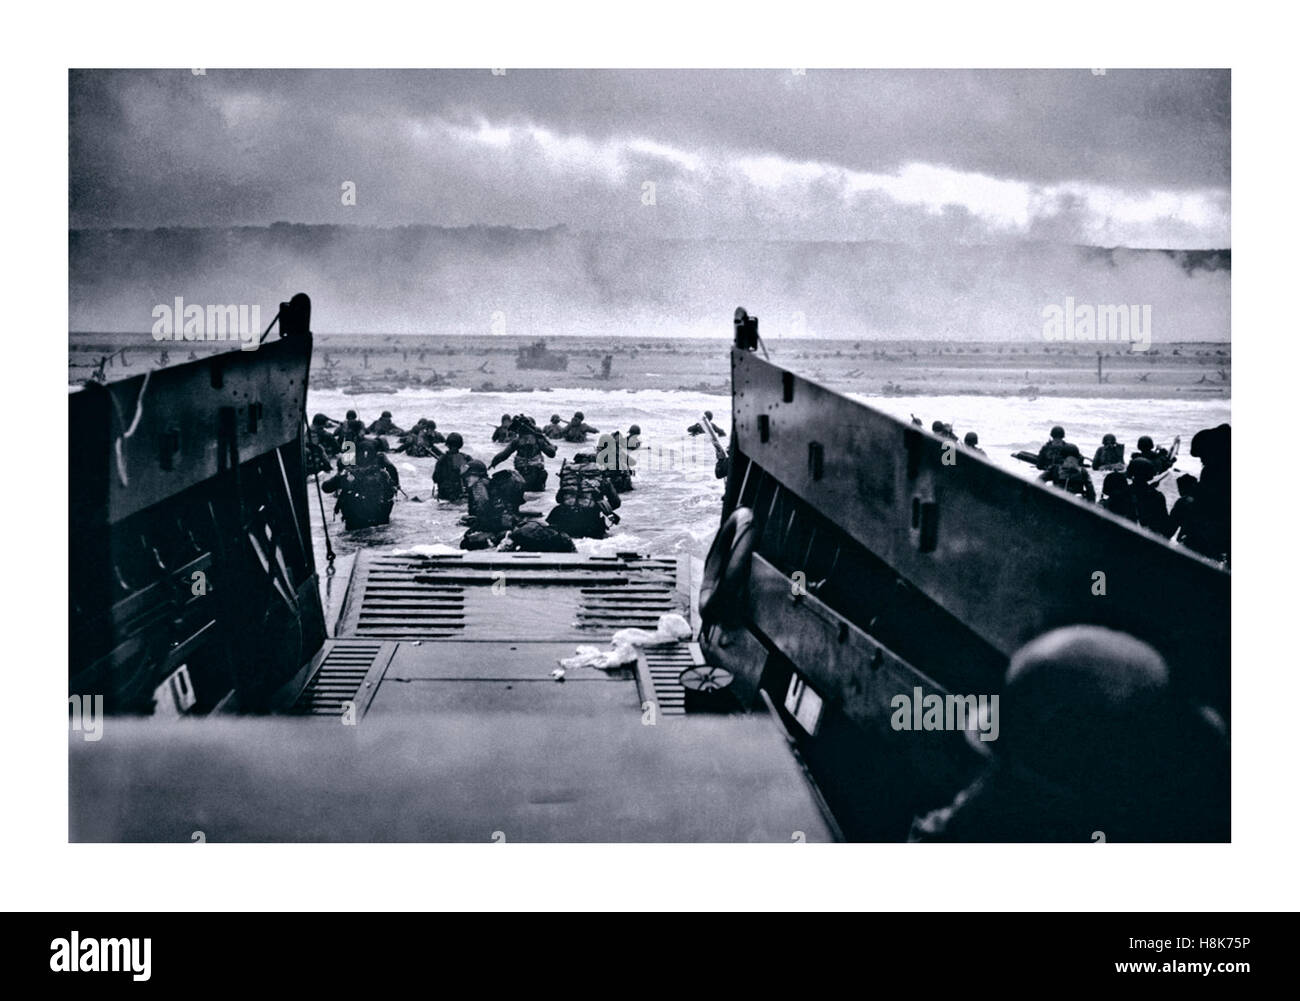 Débarquement en Normandie de la deuxième Guerre mondiale DE L'UTAH BEACH le 6 juin 1944 (appelé jour J), les opérations d'atterrissage en bateau-embarcation de l'invasion alliée de l'Allemagne nazie ont occupé la France normande Banque D'Images